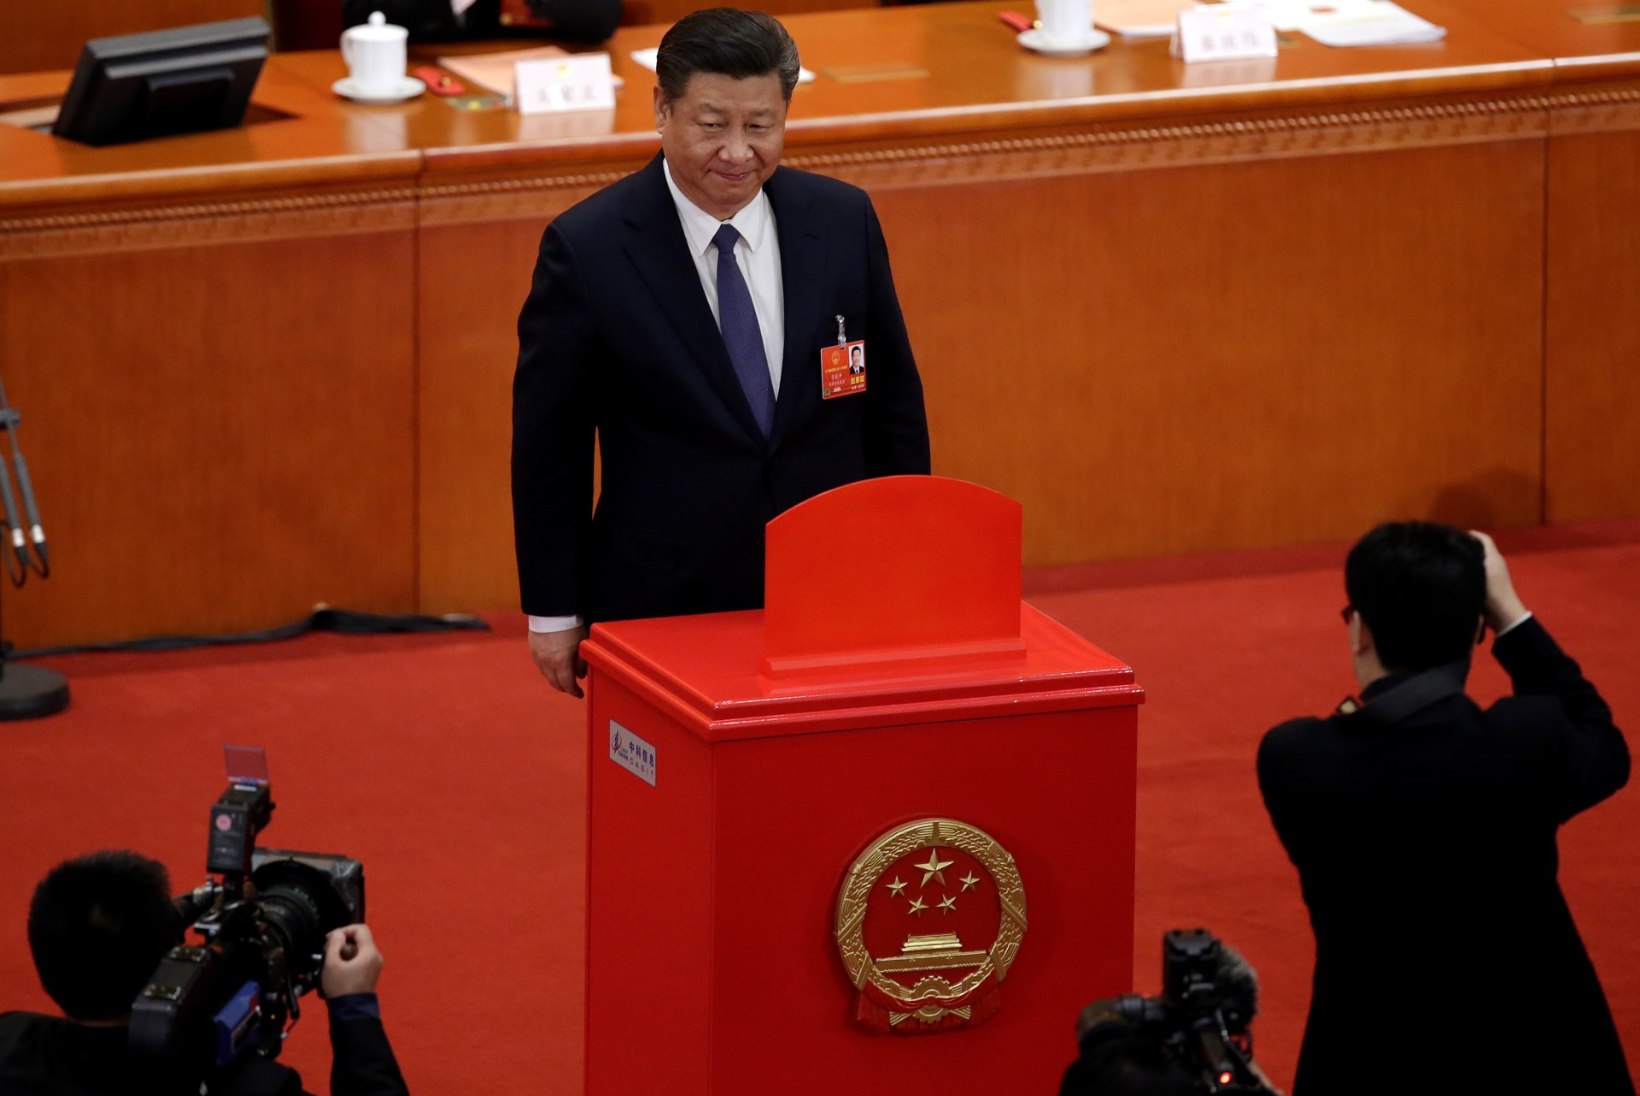 Hiina president Xi Jinping võib võimule jääda piiramatuks ajaks